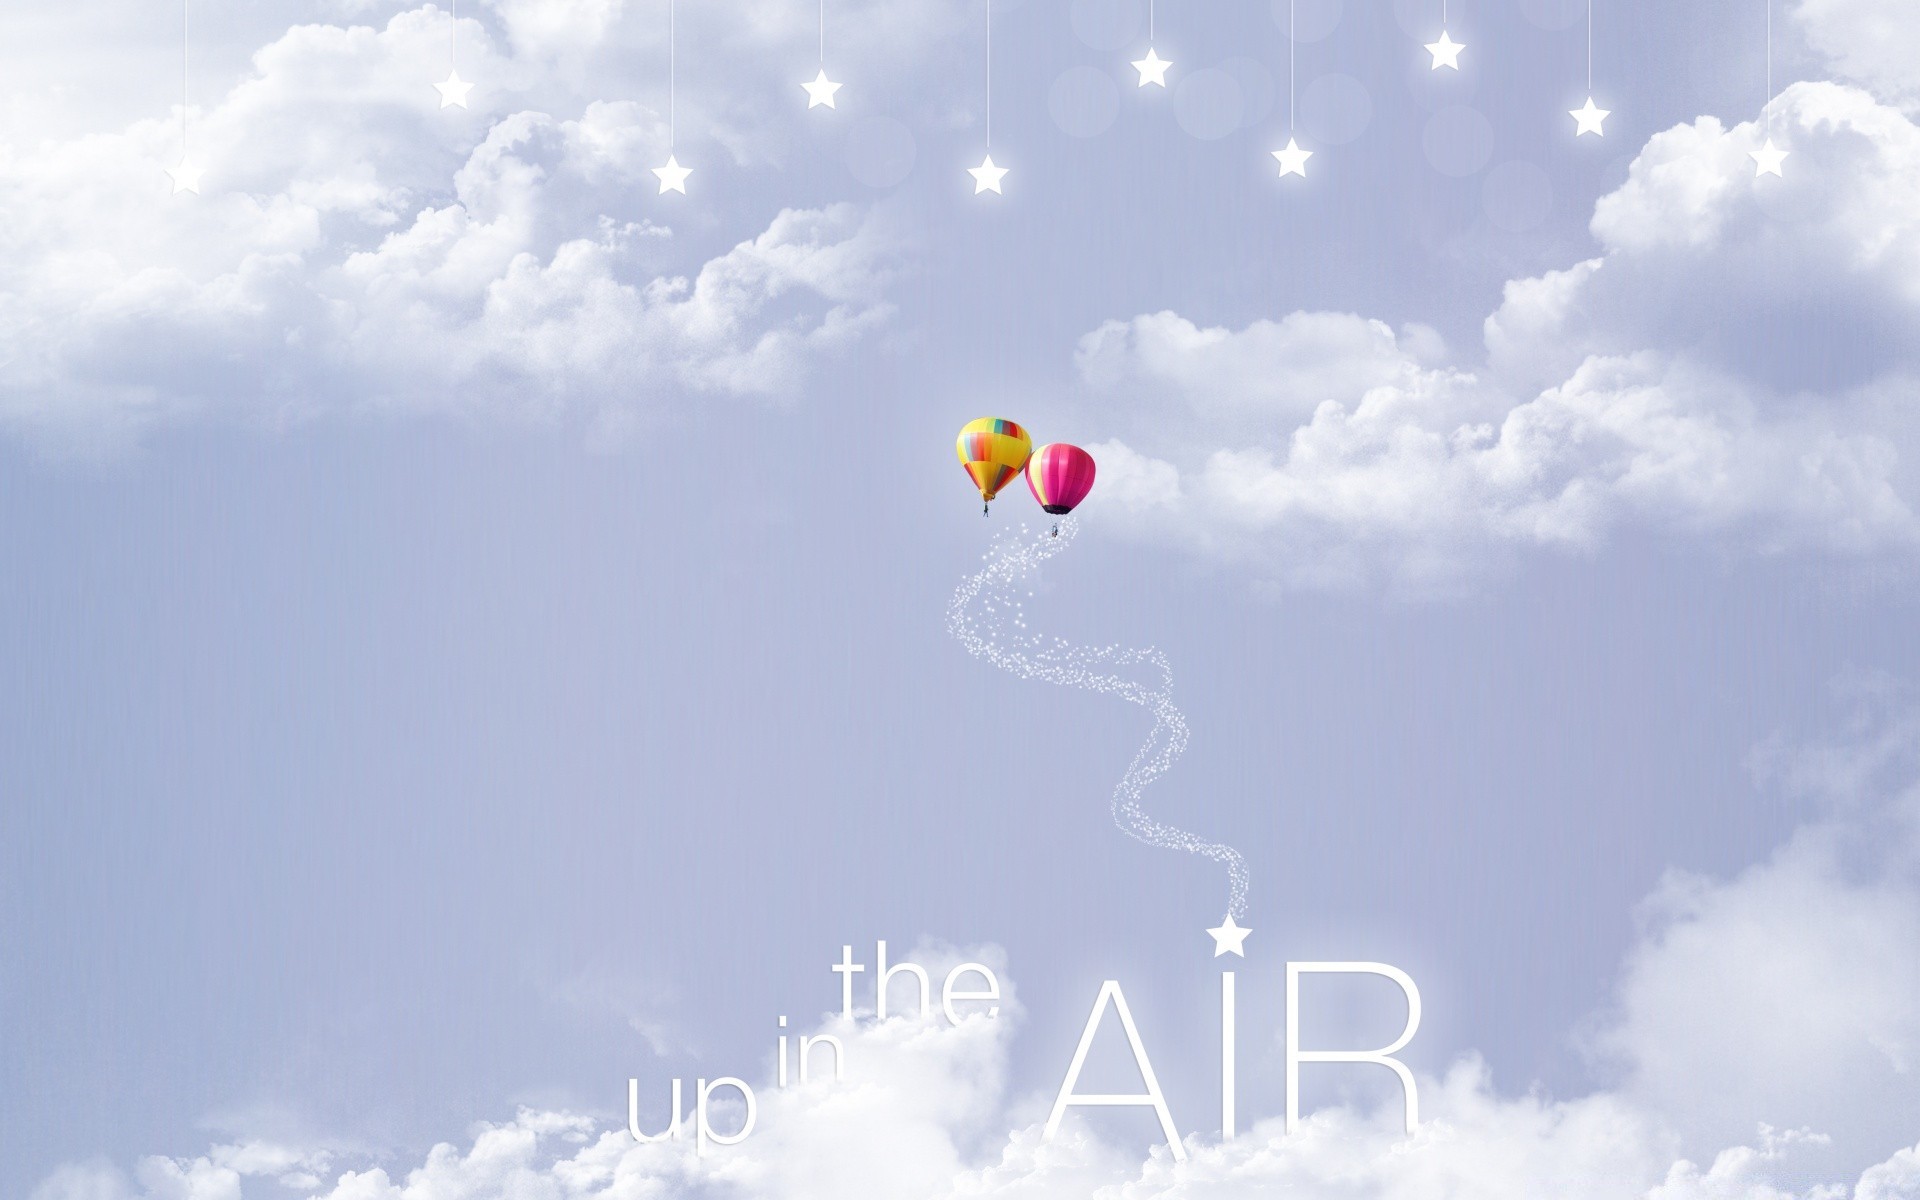 креатив небо воздуха свобода высокая воздушный шар на открытом воздухе удовольствие летать рейс парашют воздухе лето плавание ветер хорошую погоду голубое небо приключения